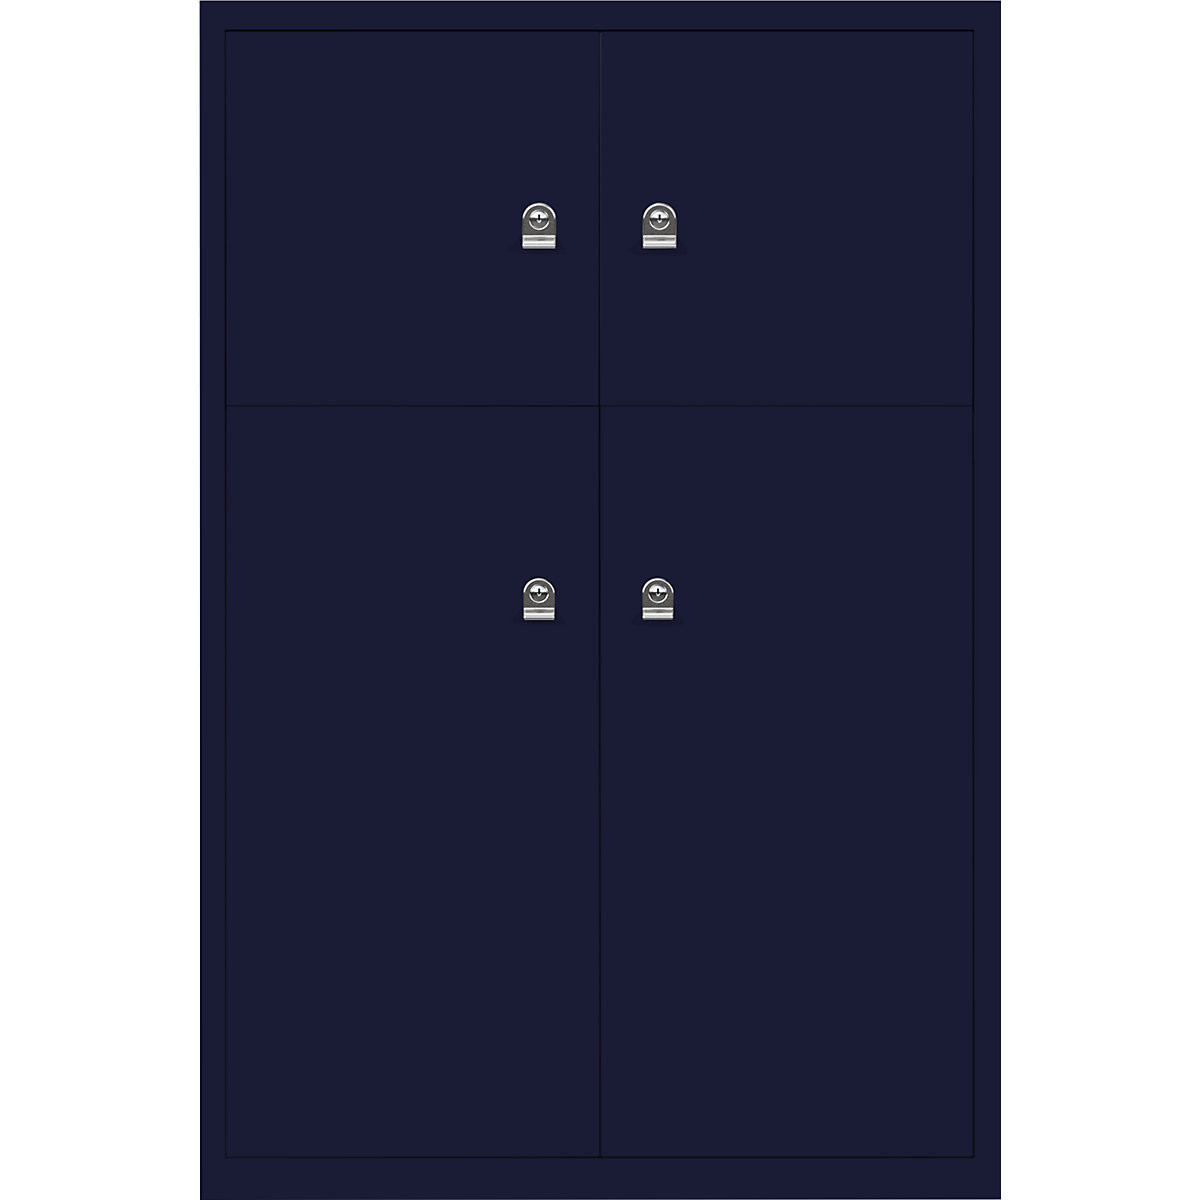 Omara s predelki z zaklepanjem LateralFile™ – BISLEY, 4 predelki z zaklepanjem, višina 2 x 375 mm, 2 x 755 mm, oxfordsko modre barve-26